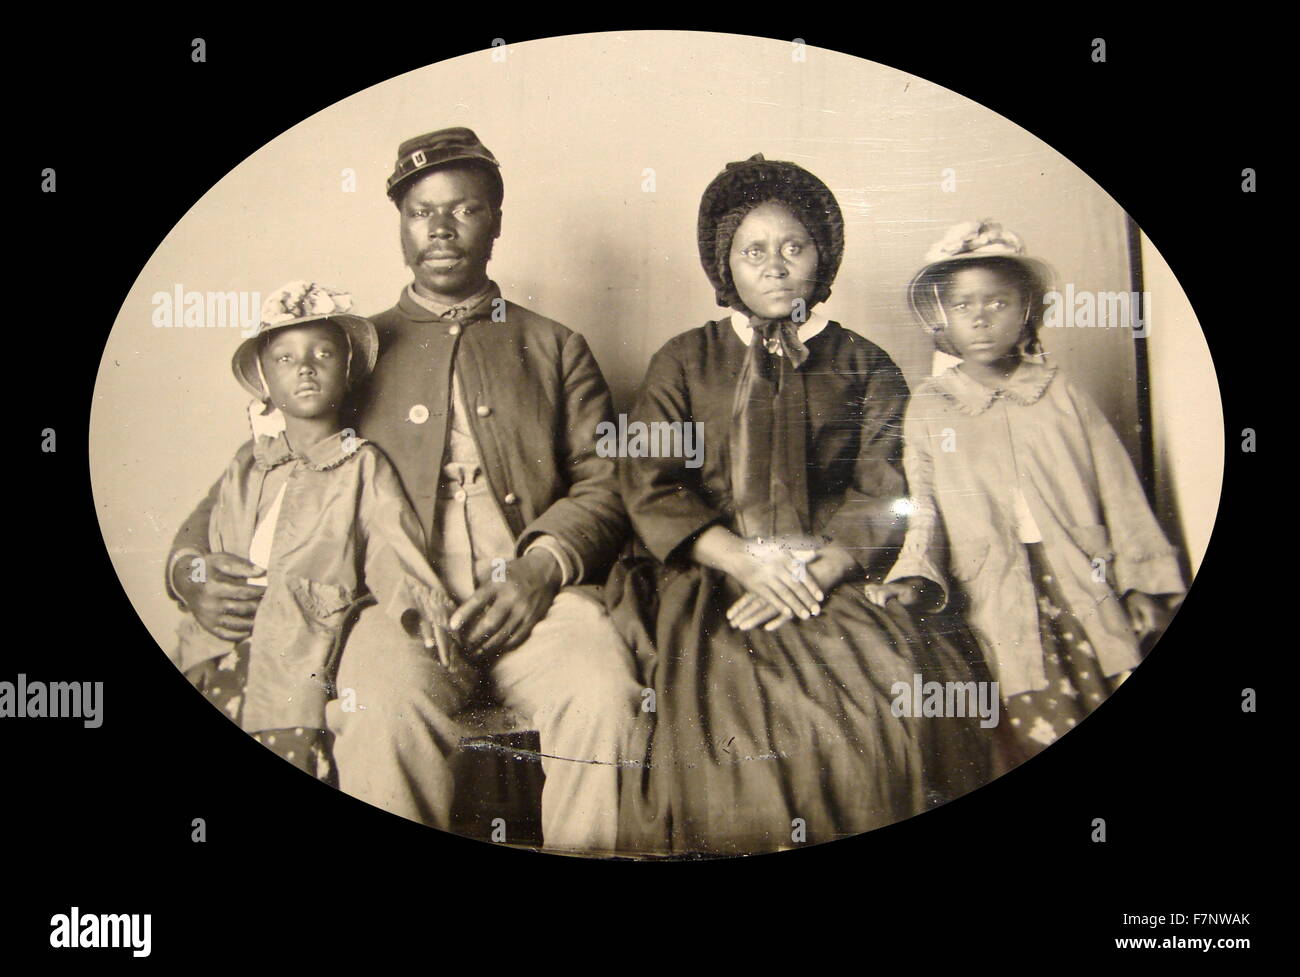 Fotografía de un afroamericano, Guerra Civil, soldado de la unión con su familia. c1863-65 Foto de stock